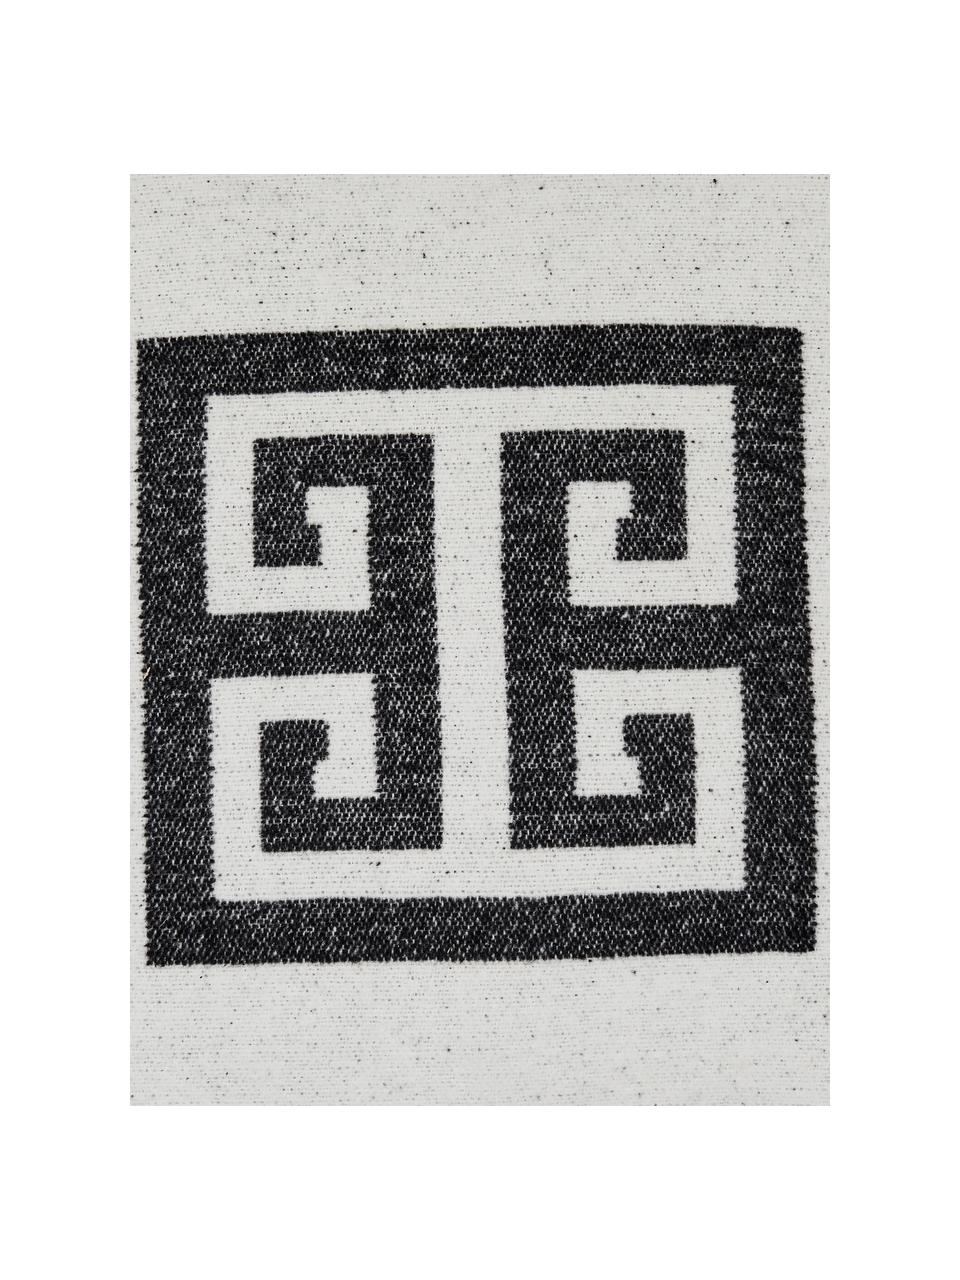 Kissenhülle Lugano in Schwarz/Weiss mit grafischem Muster, 100% Polyester, Schwarz, Gebrochenes Weiss, B 45 x L 45 cm